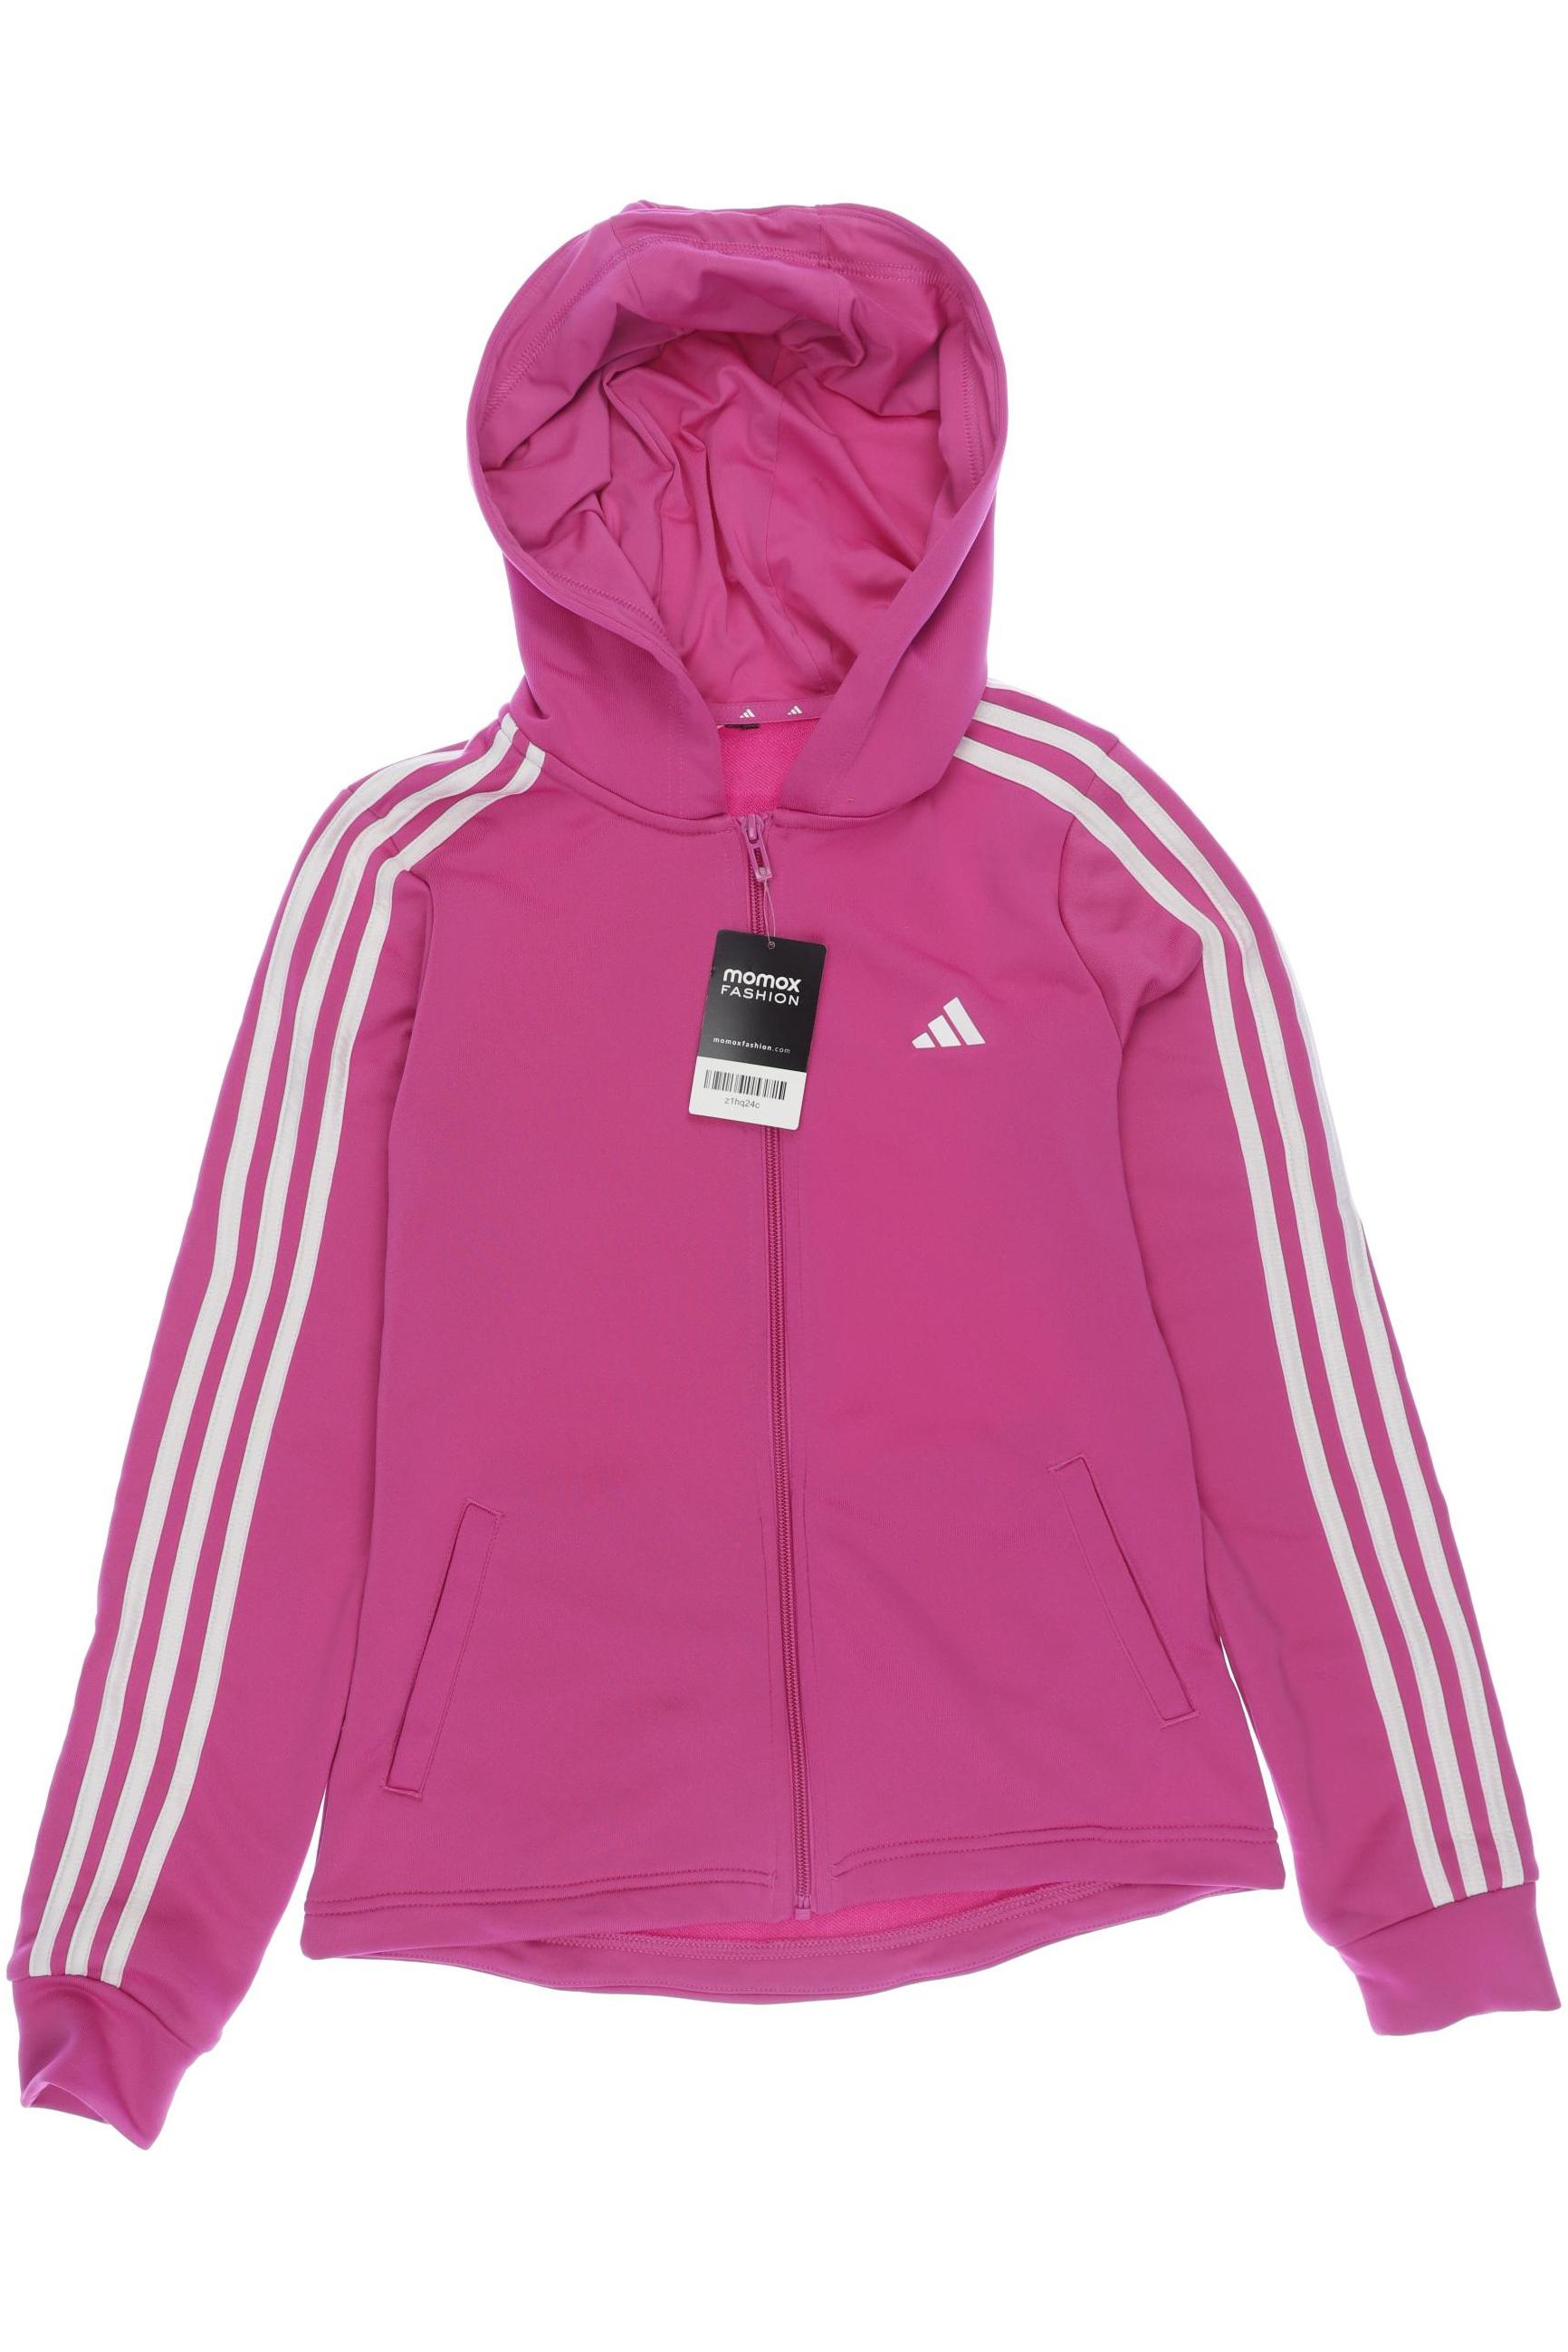 adidas Damen Hoodies & Sweater, pink, Gr. 146 von Adidas